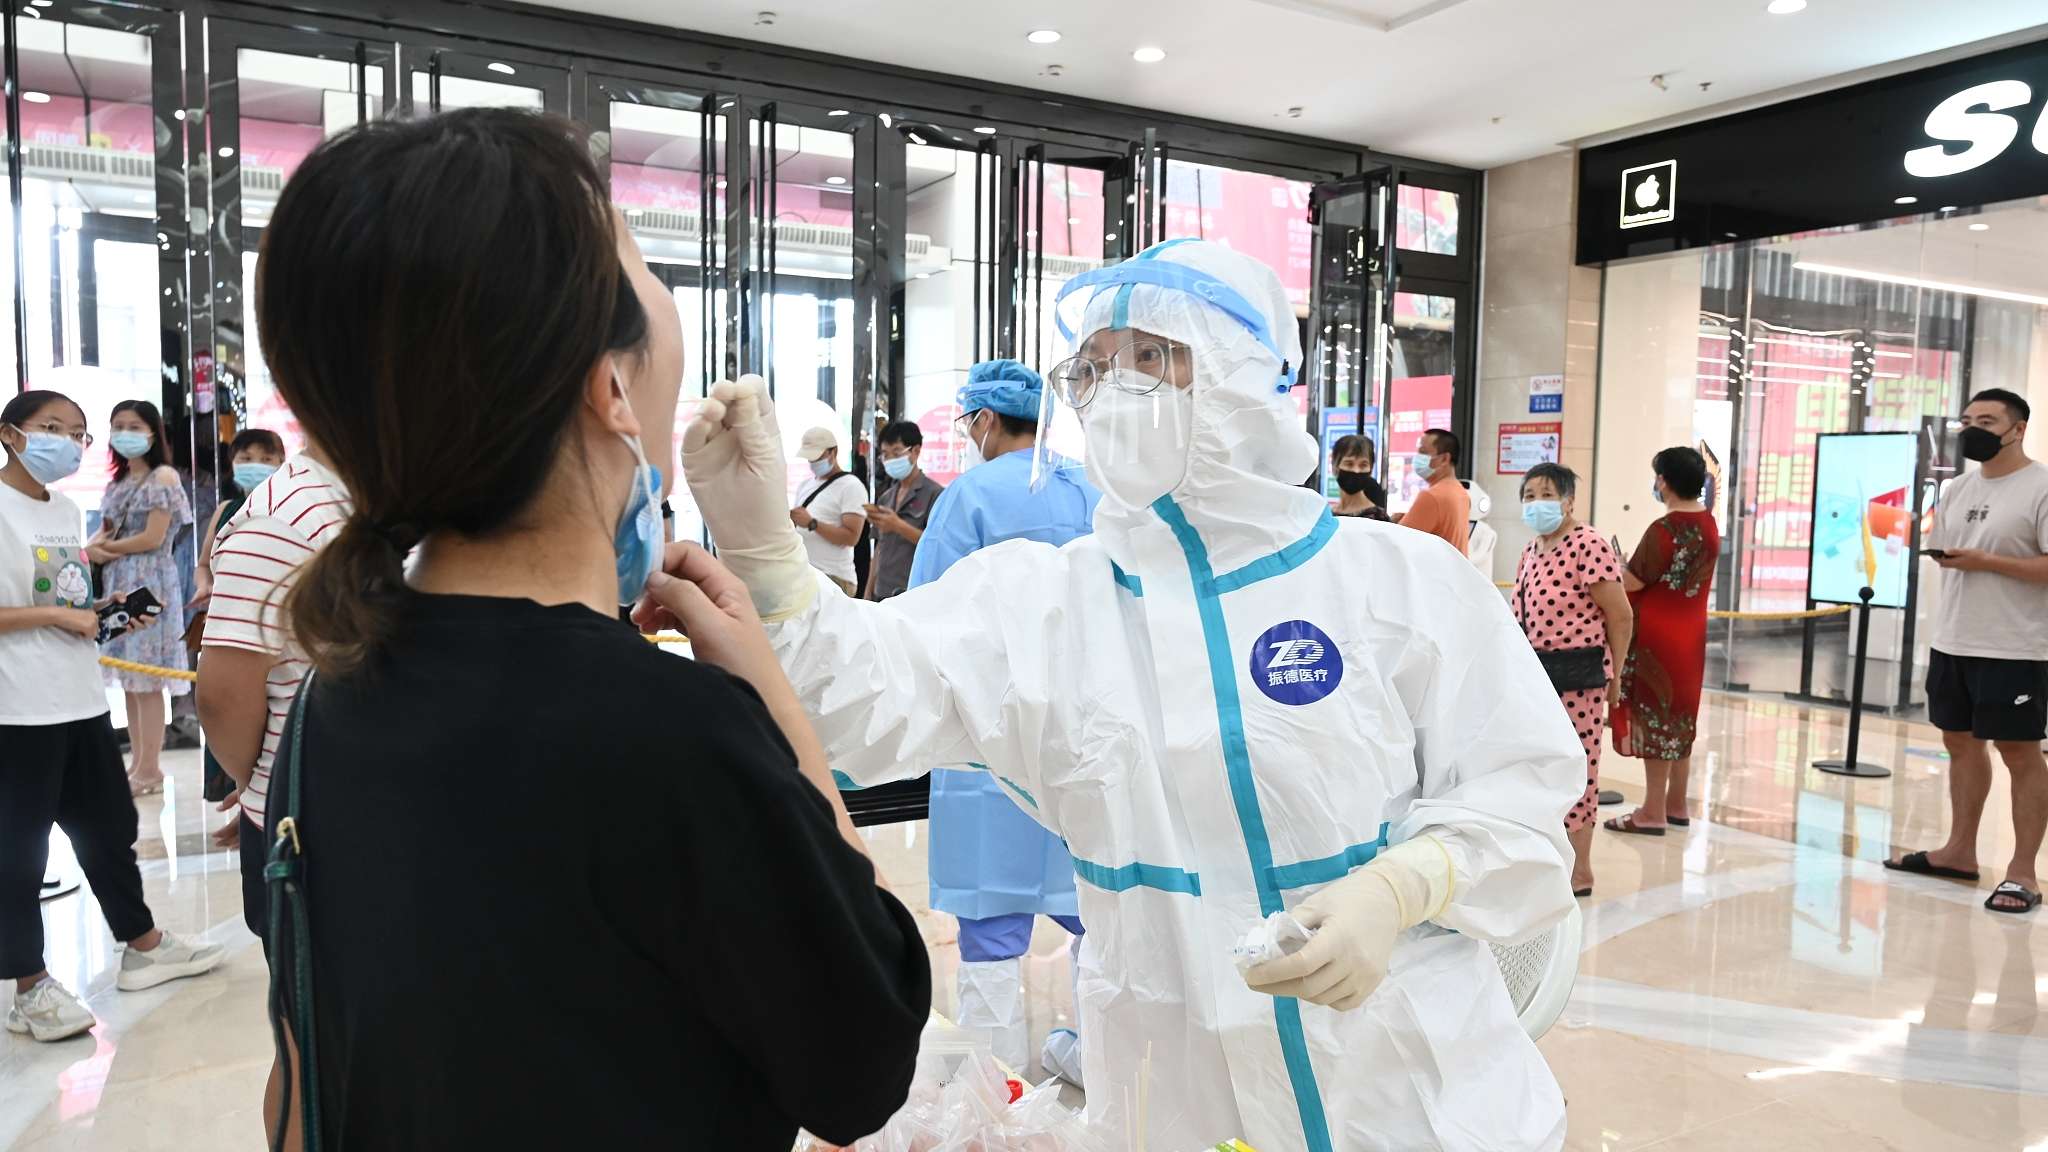 Ciudad china declara cuarentena total por nuevo brote de coronavirus
